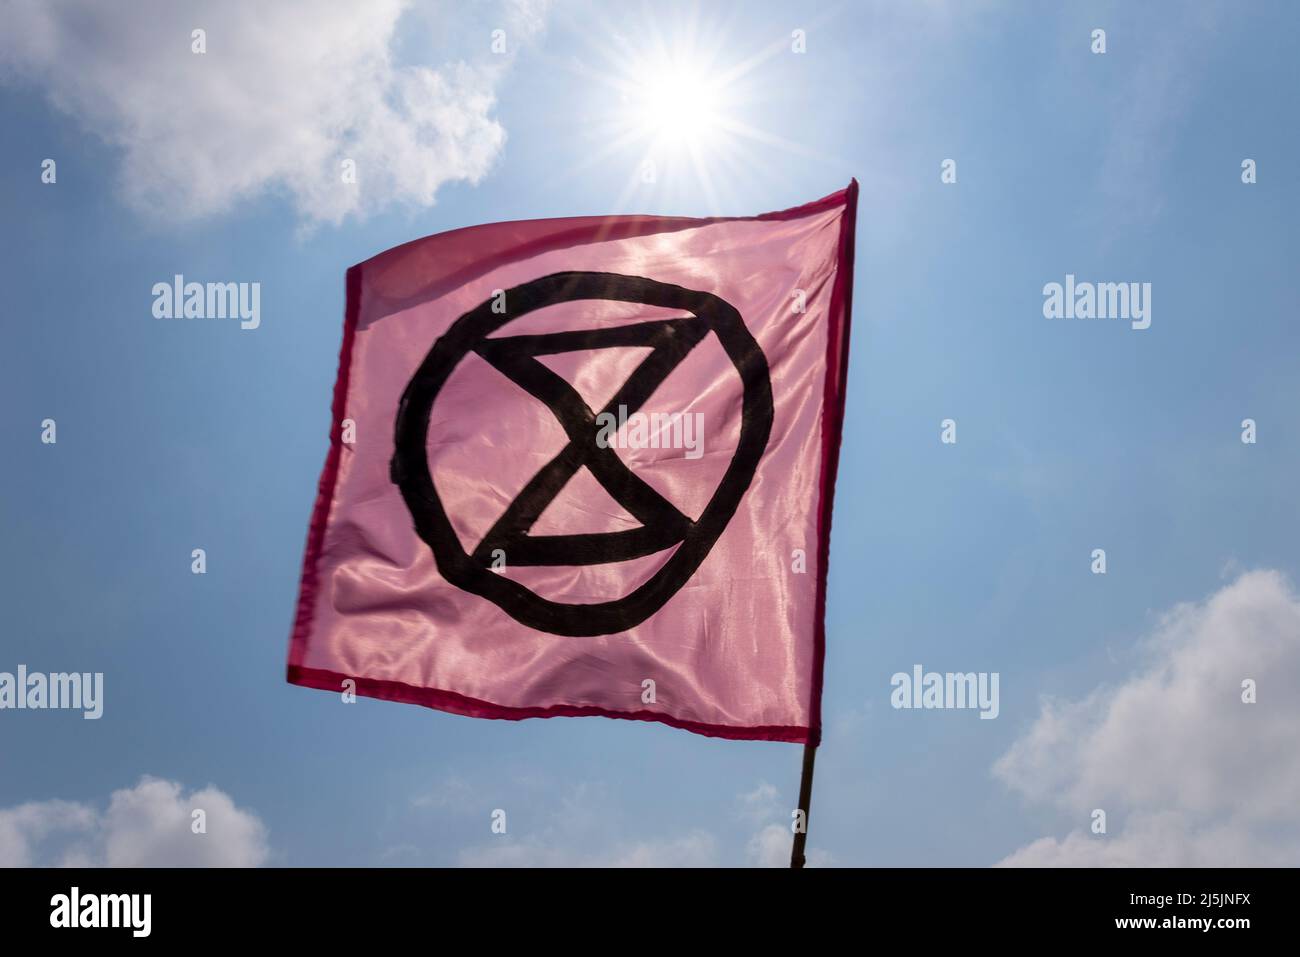 Extinción Bandera de Rebelión, con símbolo de reloj de arena, bajo un sol brillante. Calentamiento global, activismo por el cambio climático. Voló durante la protesta de aguas residuales en Southend Foto de stock